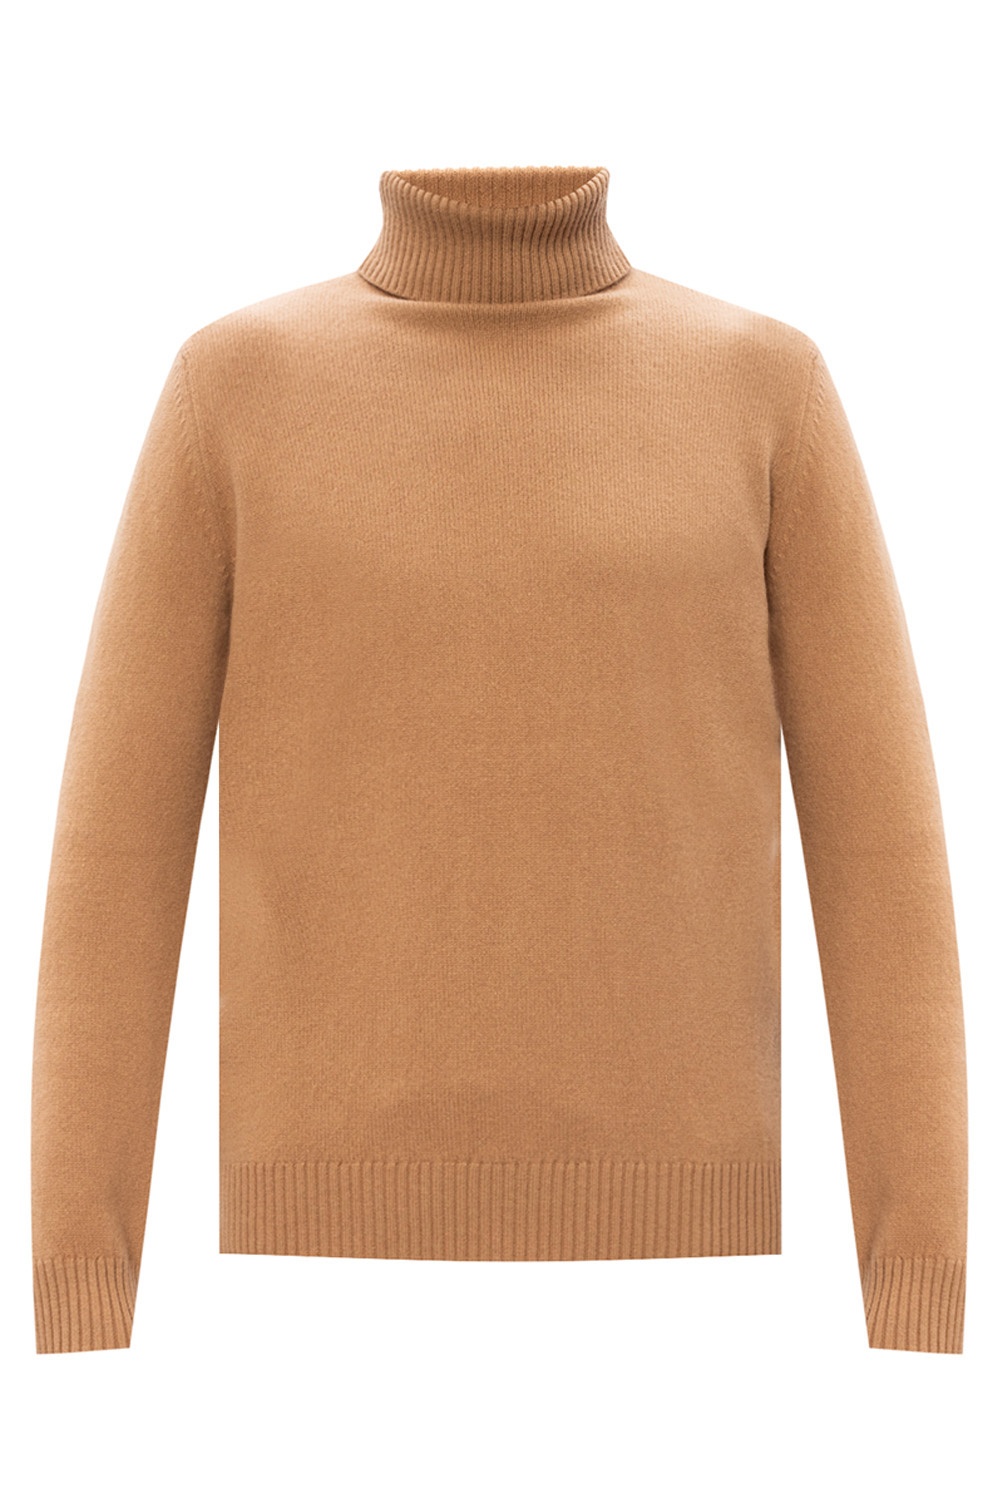 . Turtleneck sweater | Men's Clothing | Vitkac